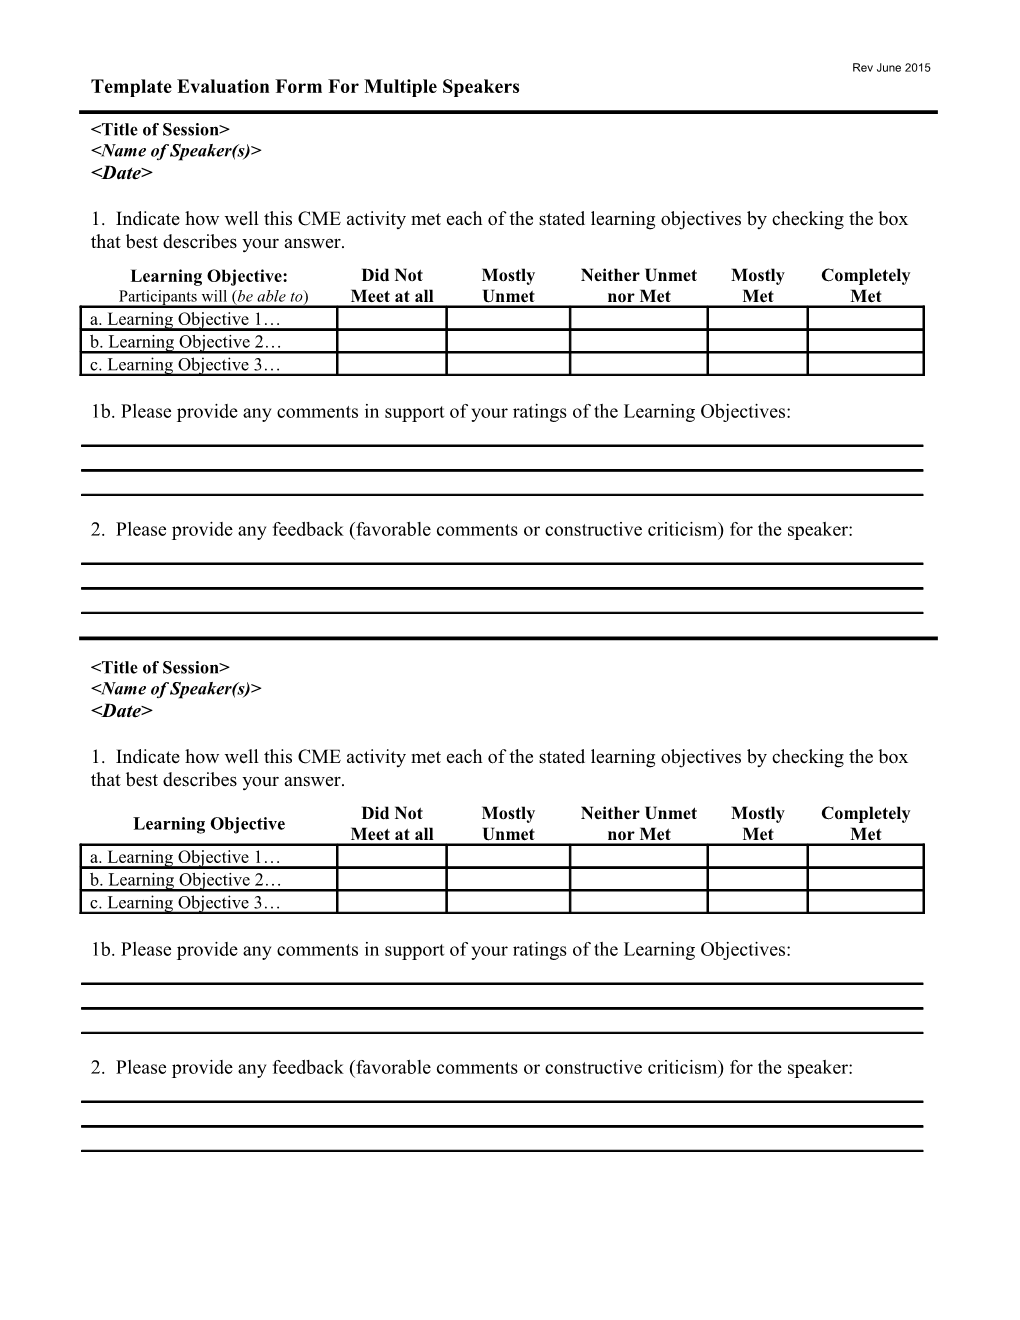 Appendix H: Template Evaluation Form